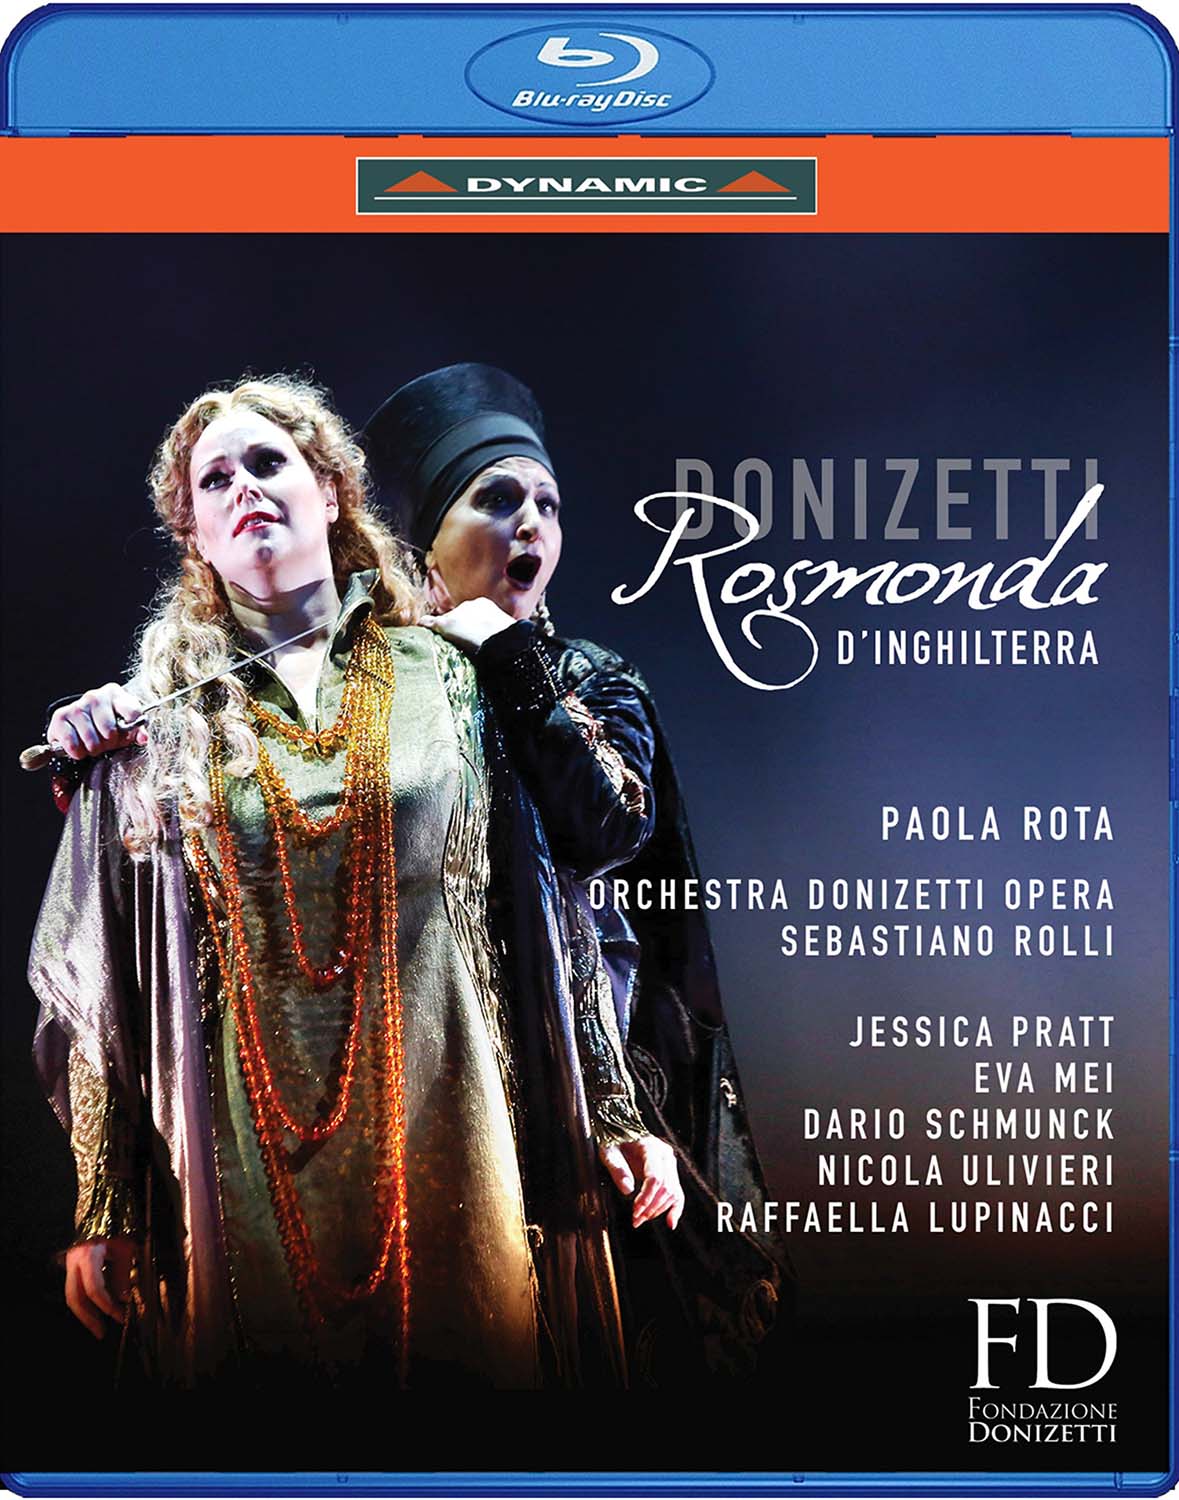 Music Blu-Ray Gaetano Donizetti - Rosmonda D'Inghilterra NUOVO SIGILLATO, EDIZIONE DEL 30/03/2017 SUBITO DISPONIBILE